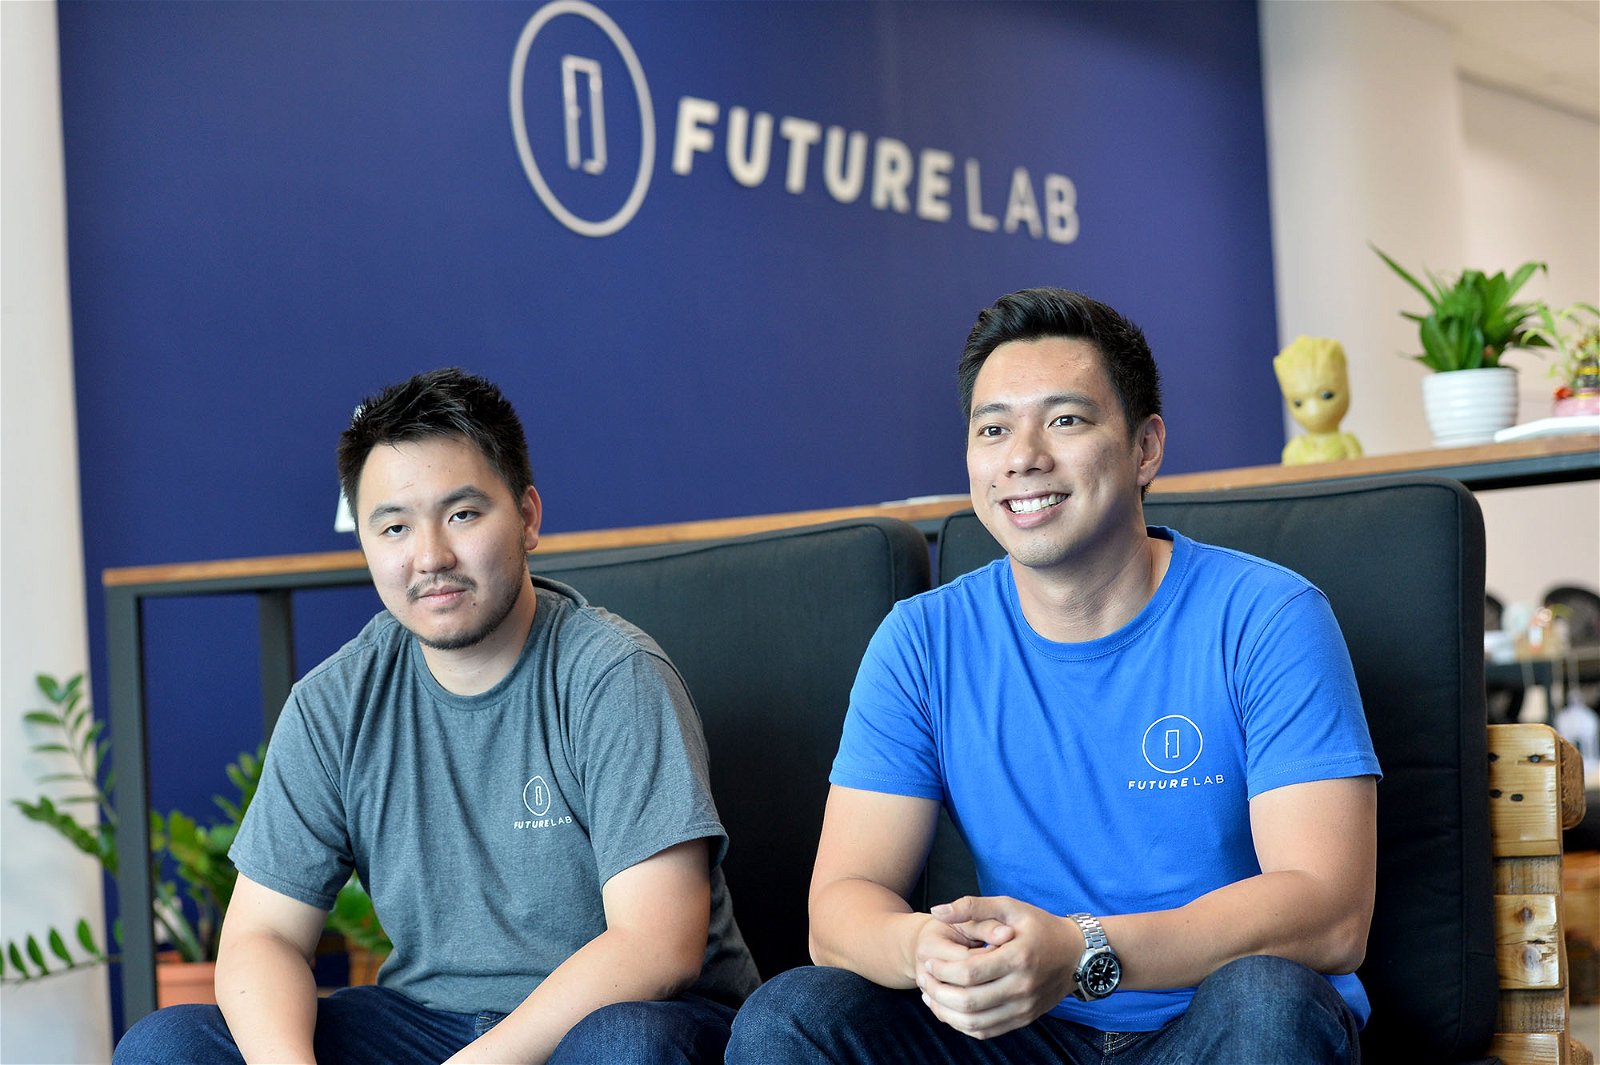 戴枫为陈（左）、布莱恩及另外一个创办人克拉丽莎（Clarissa Chang）是12岁就认识至今的朋友。3人当初同样因为不想从事本科专业工作而动念创办FutureLab，避免年轻人重蹈覆辙。